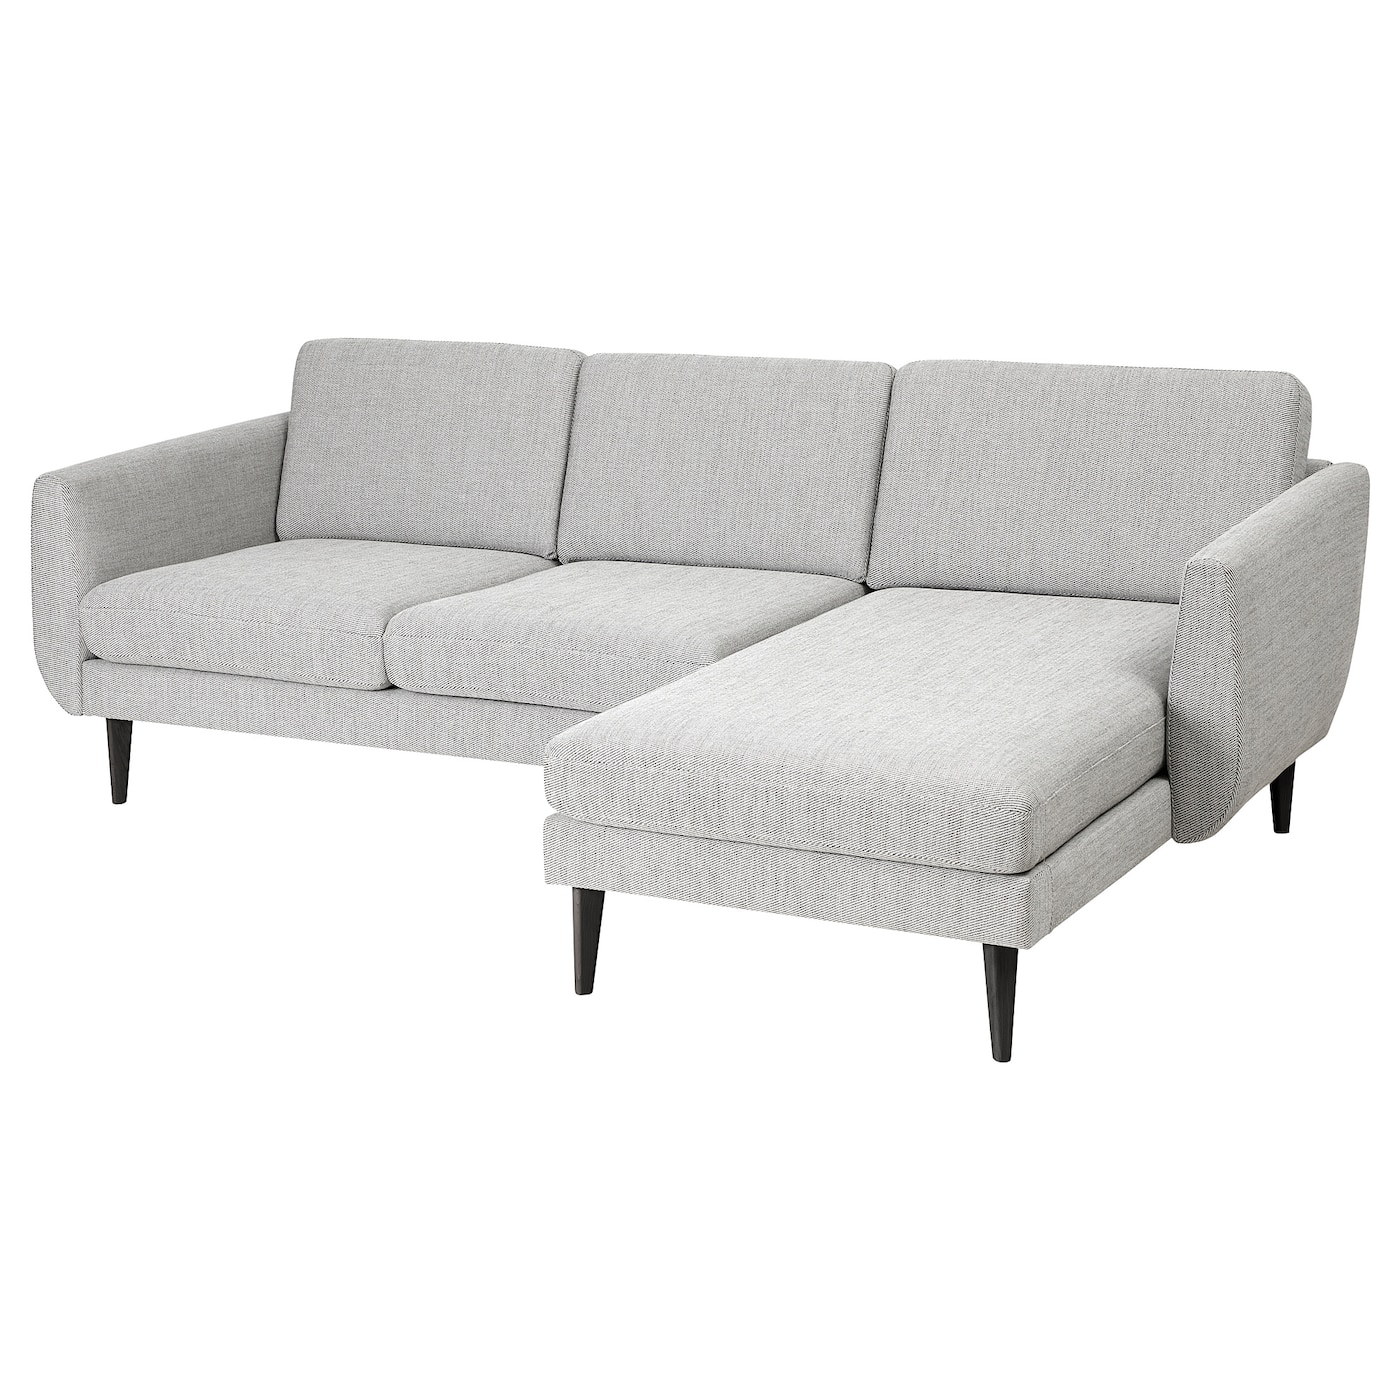 СМЕДСТОРП 3-местный диван + диван, Виарп бежевый/коричневый/черный SMEDSTORP IKEA диван офисный шарм дизайн бит с подушками коричневый